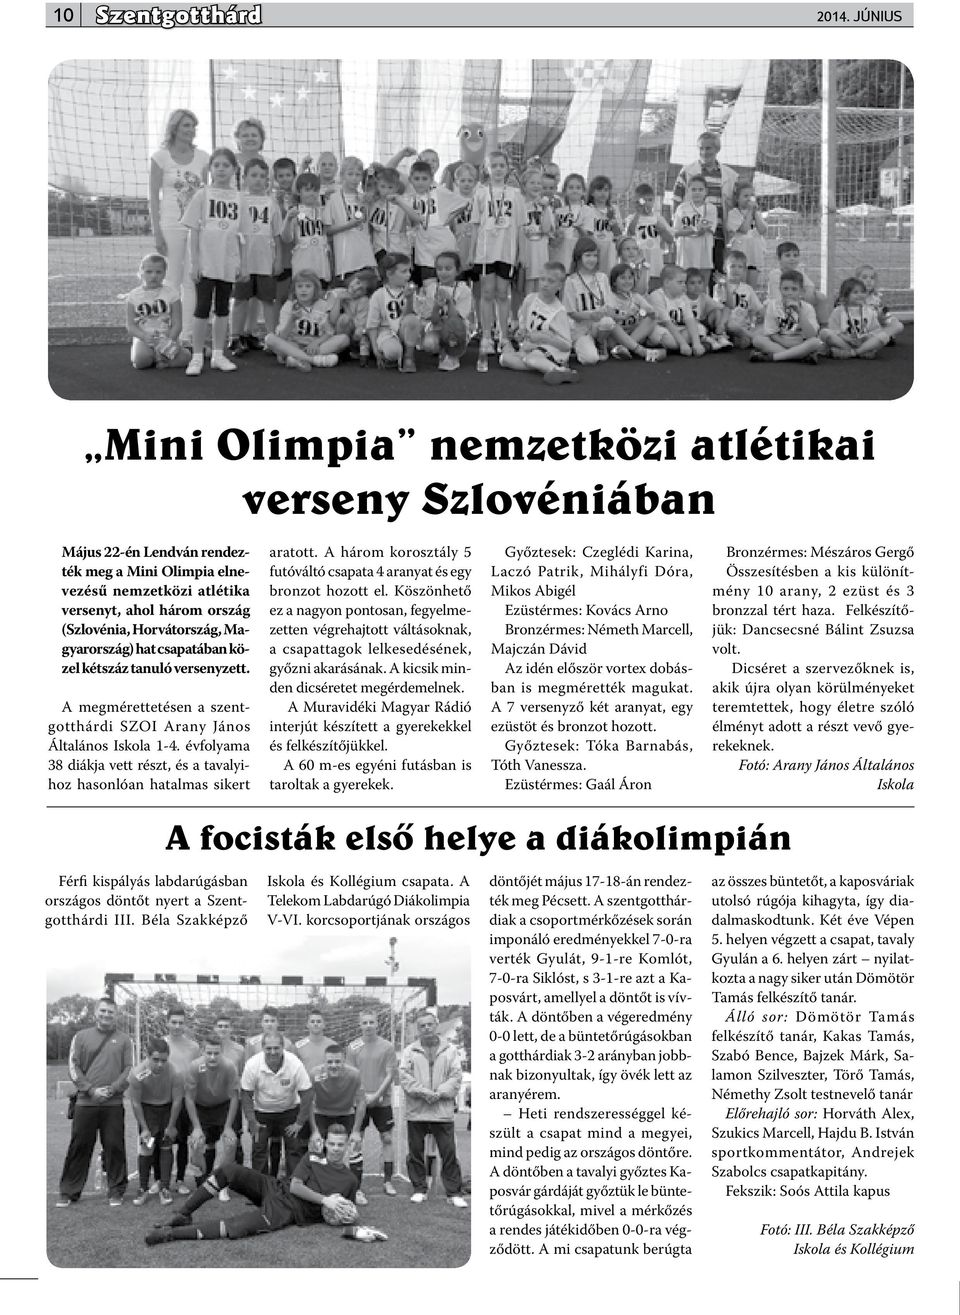 Magyarország) hat csapatában közel kétszáz tanuló versenyzett. A megmérettetésen a szentgotthárdi SZOI Arany János Általános Iskola 1-4.